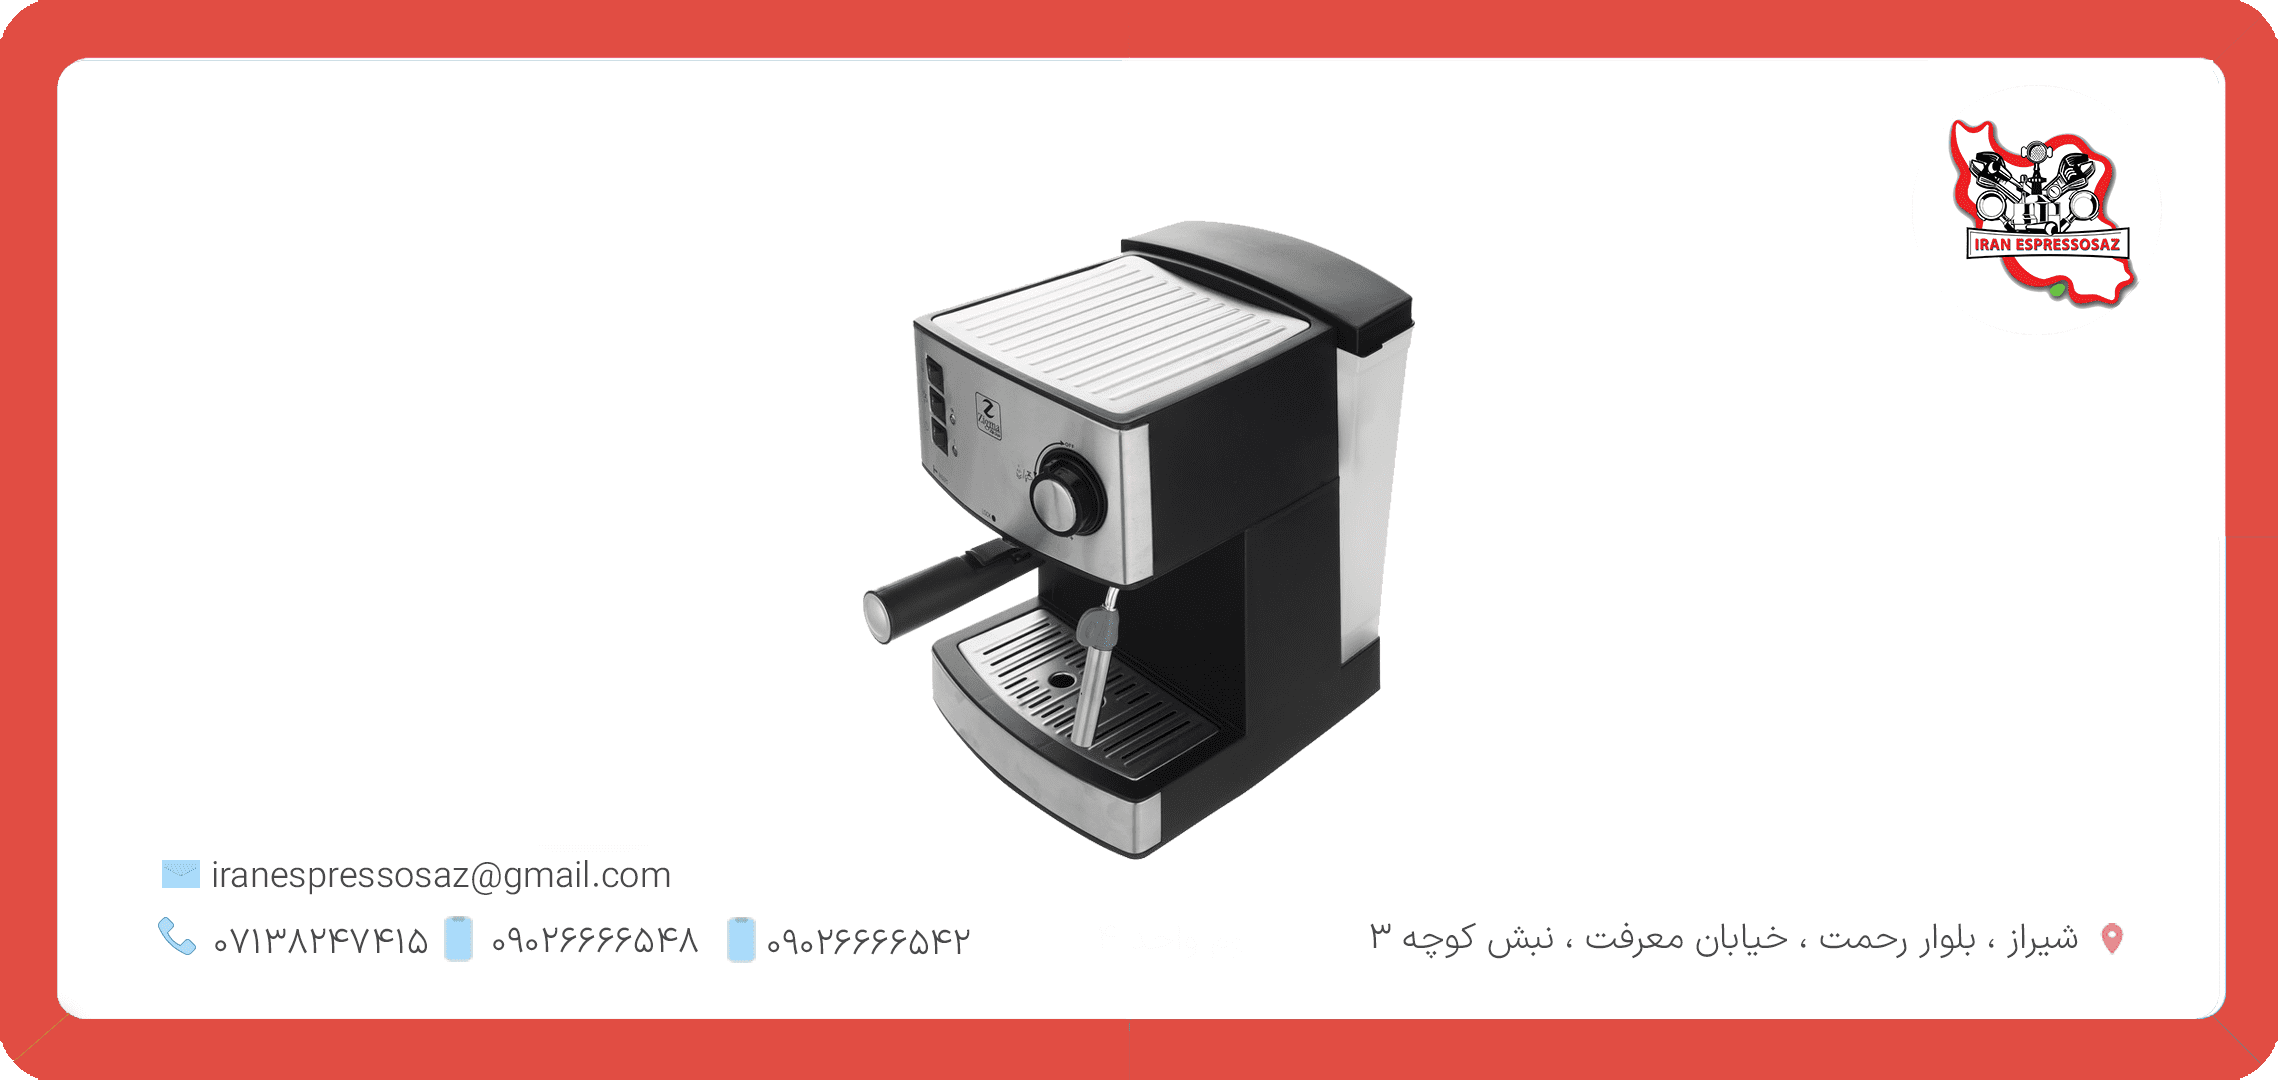 دستگاه اسپرسوساز: اصول کار، انواع و تأثیرات آن در تهیه قهوه